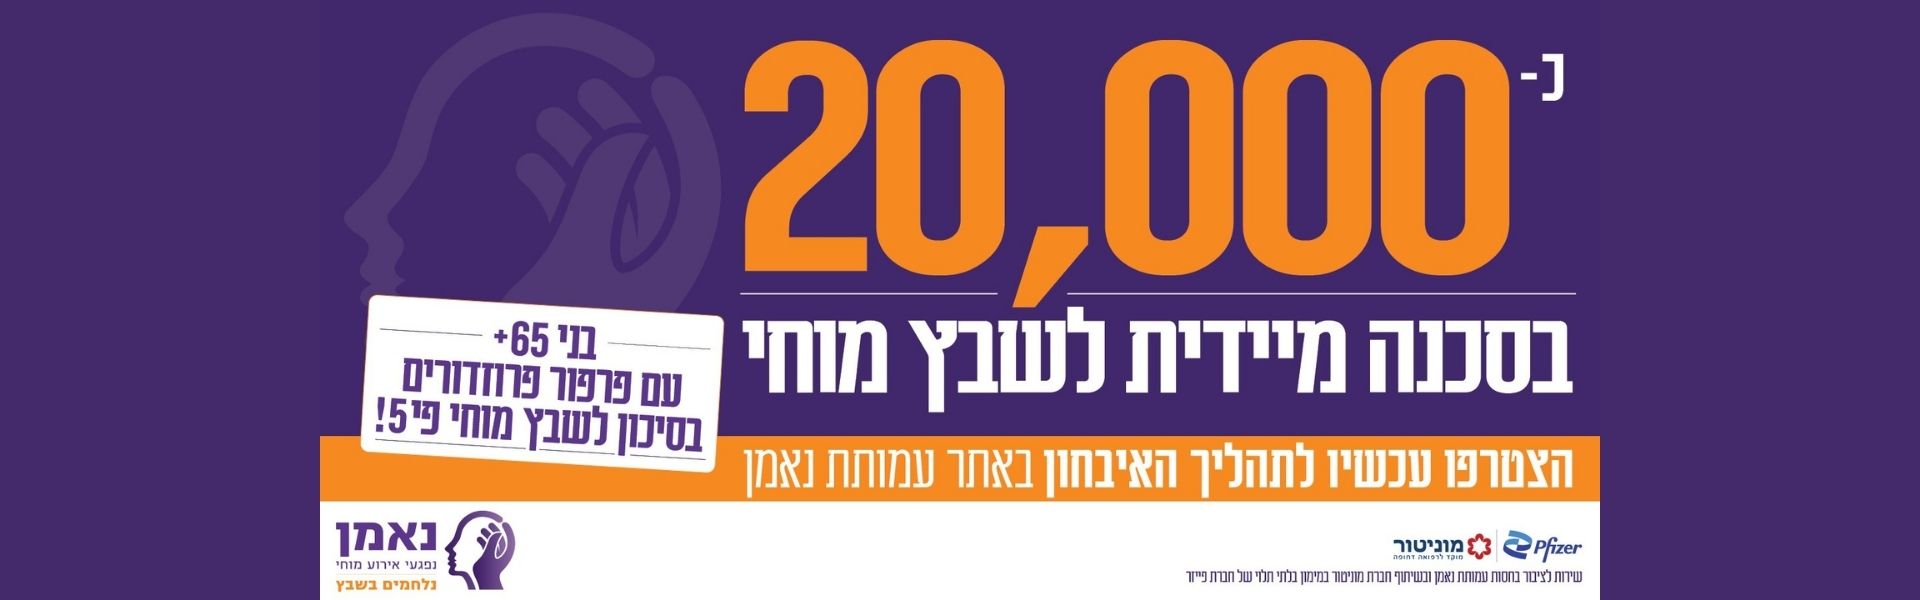 100,000 התקפי שבץ בישראל